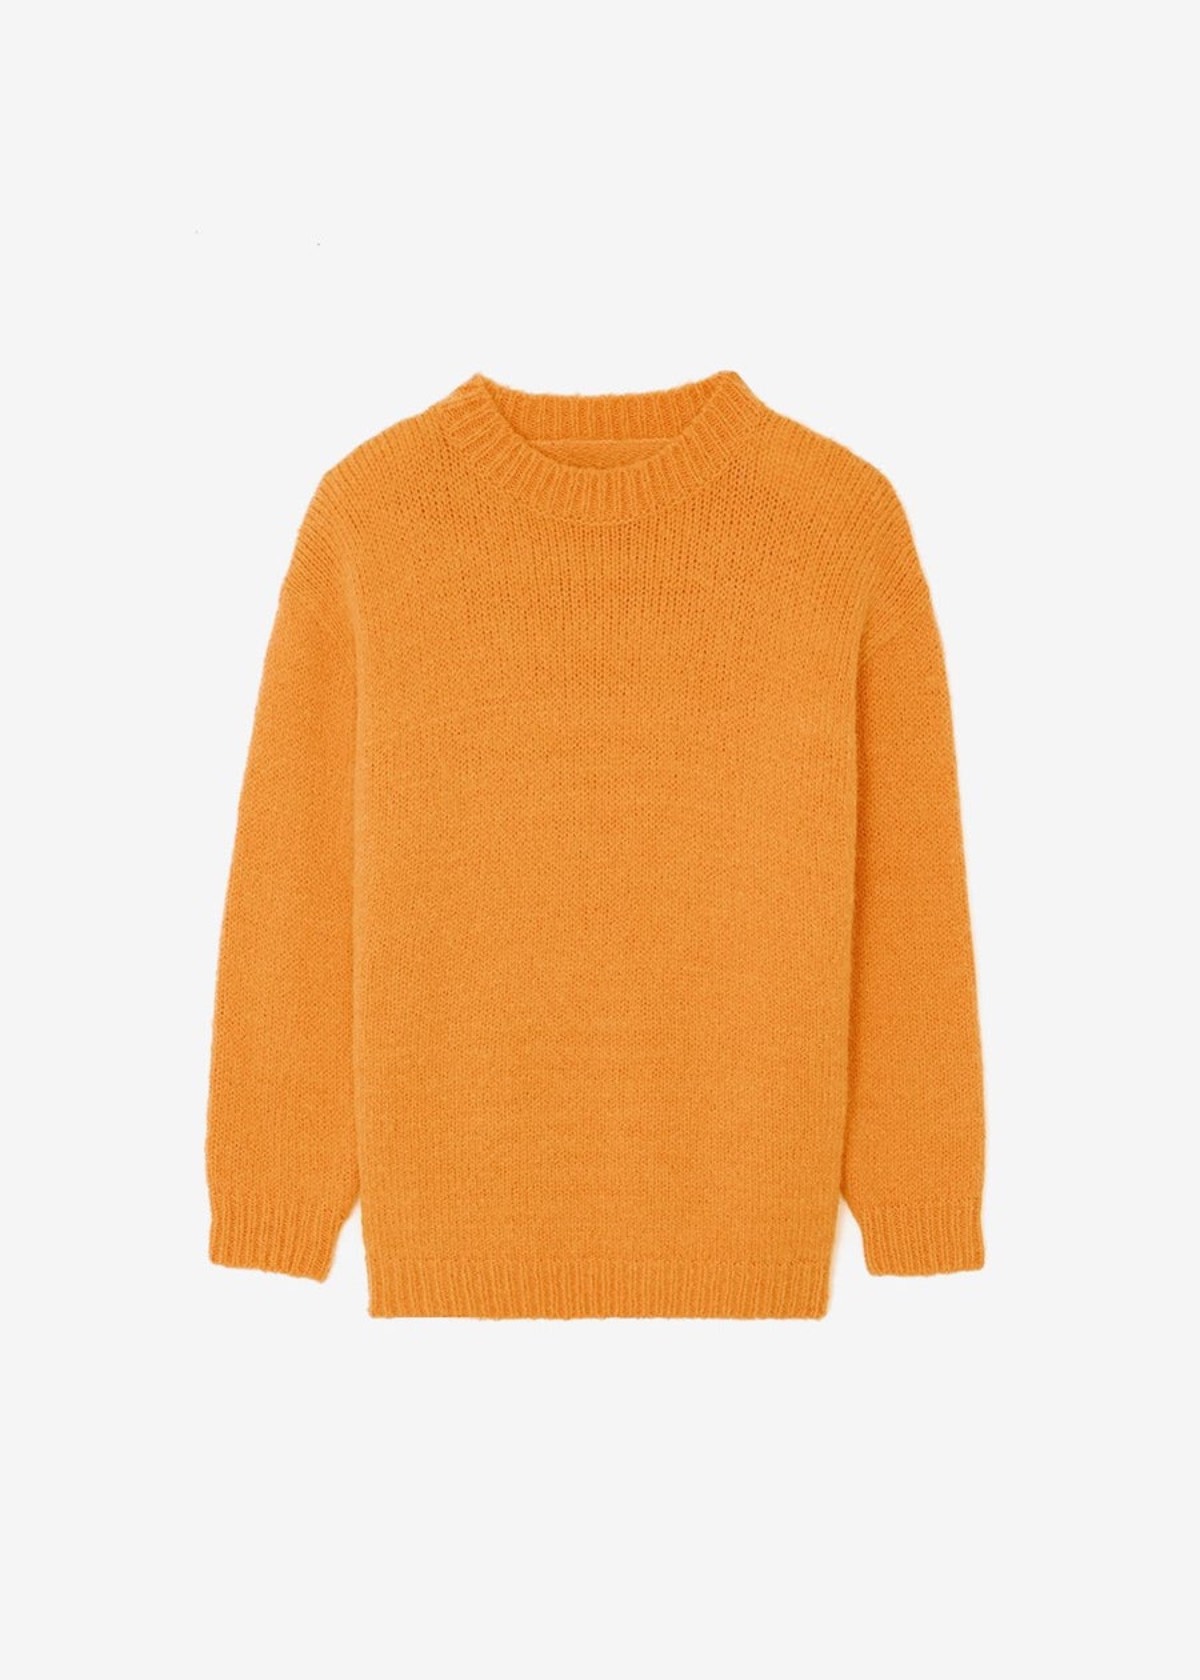 Frankie-orange-knit-900x